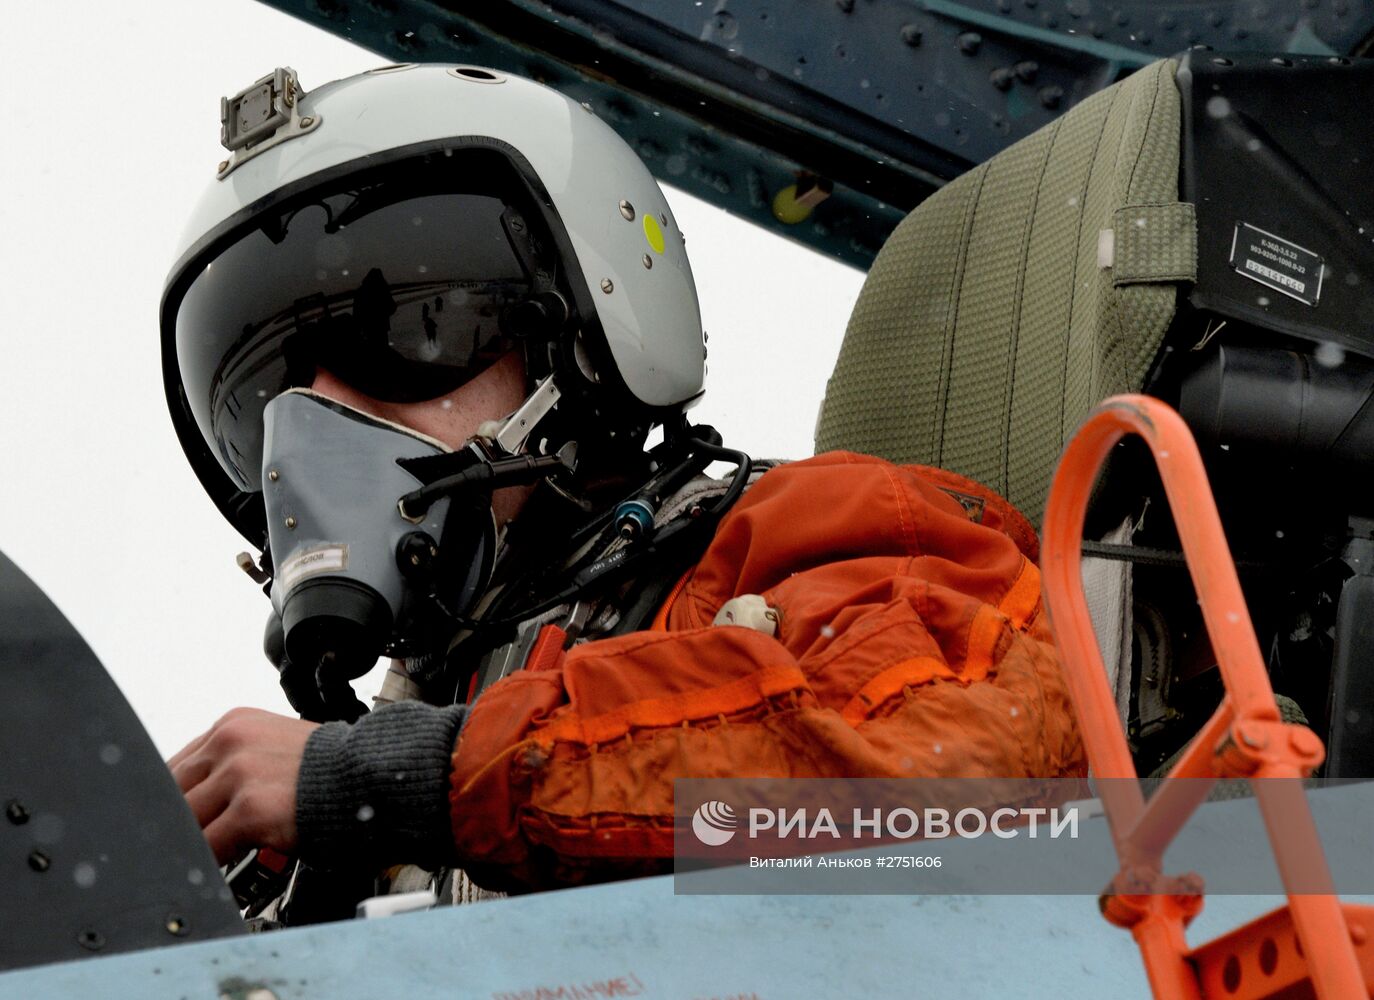 Летно-тактические учения истребительной авиации в Приморском крае